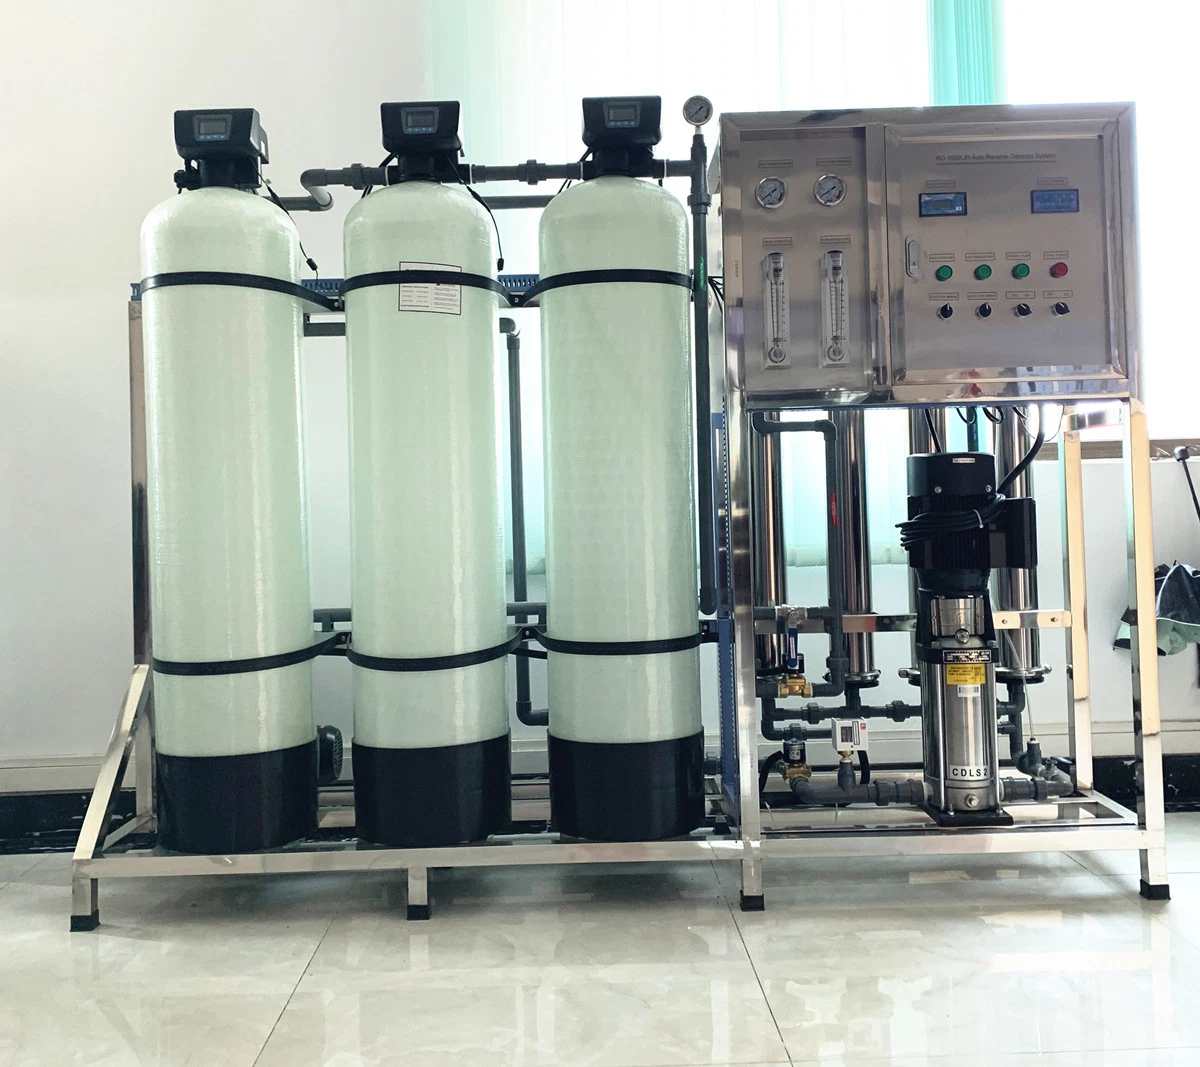 1m3 por hora de tratamiento de agua del sistema de Auto Ro Ro maquinaria Depuradora Purificador de agua el coste de la máquina